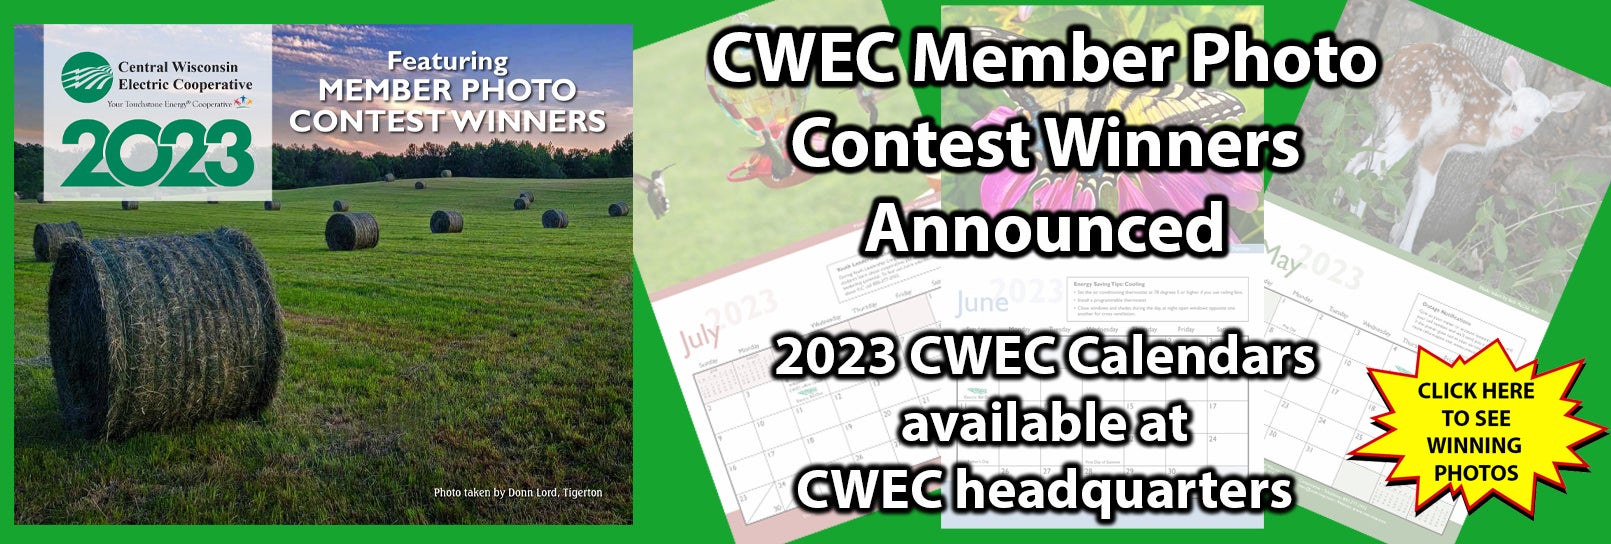 2023 CWEC Calendar Constest Winners